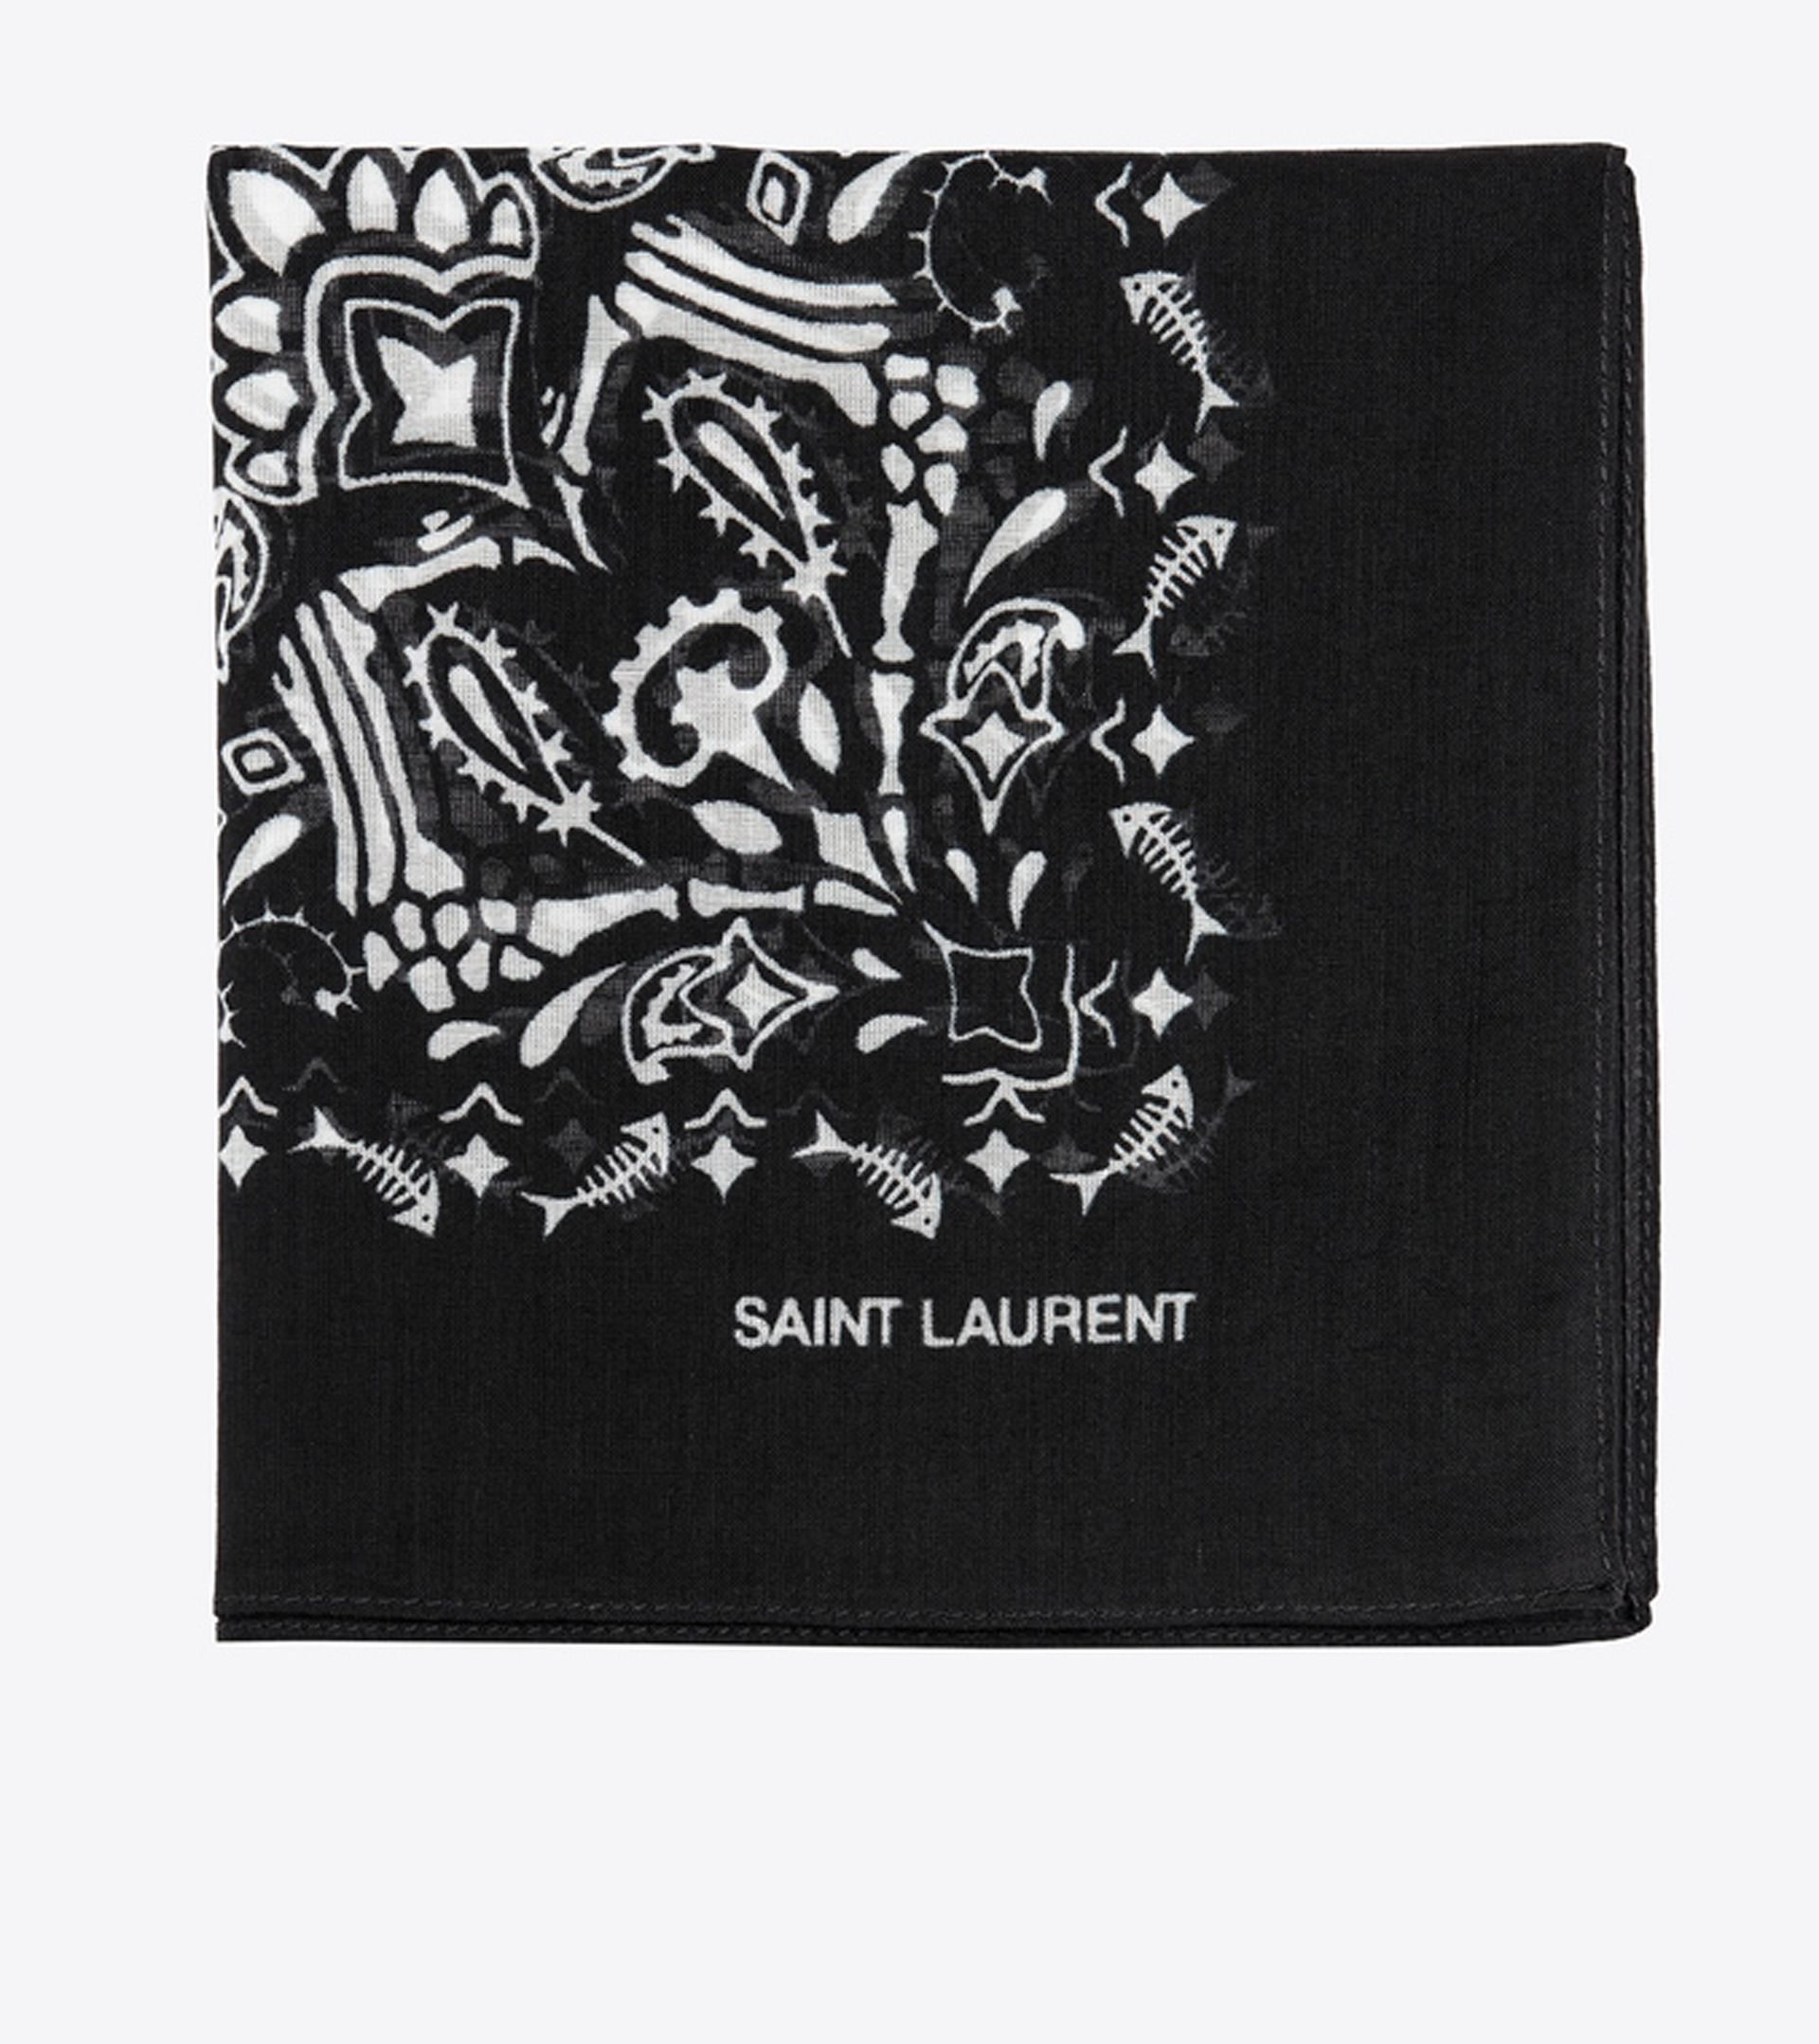 La bandana con diseño búlgaro de Saint Laurent